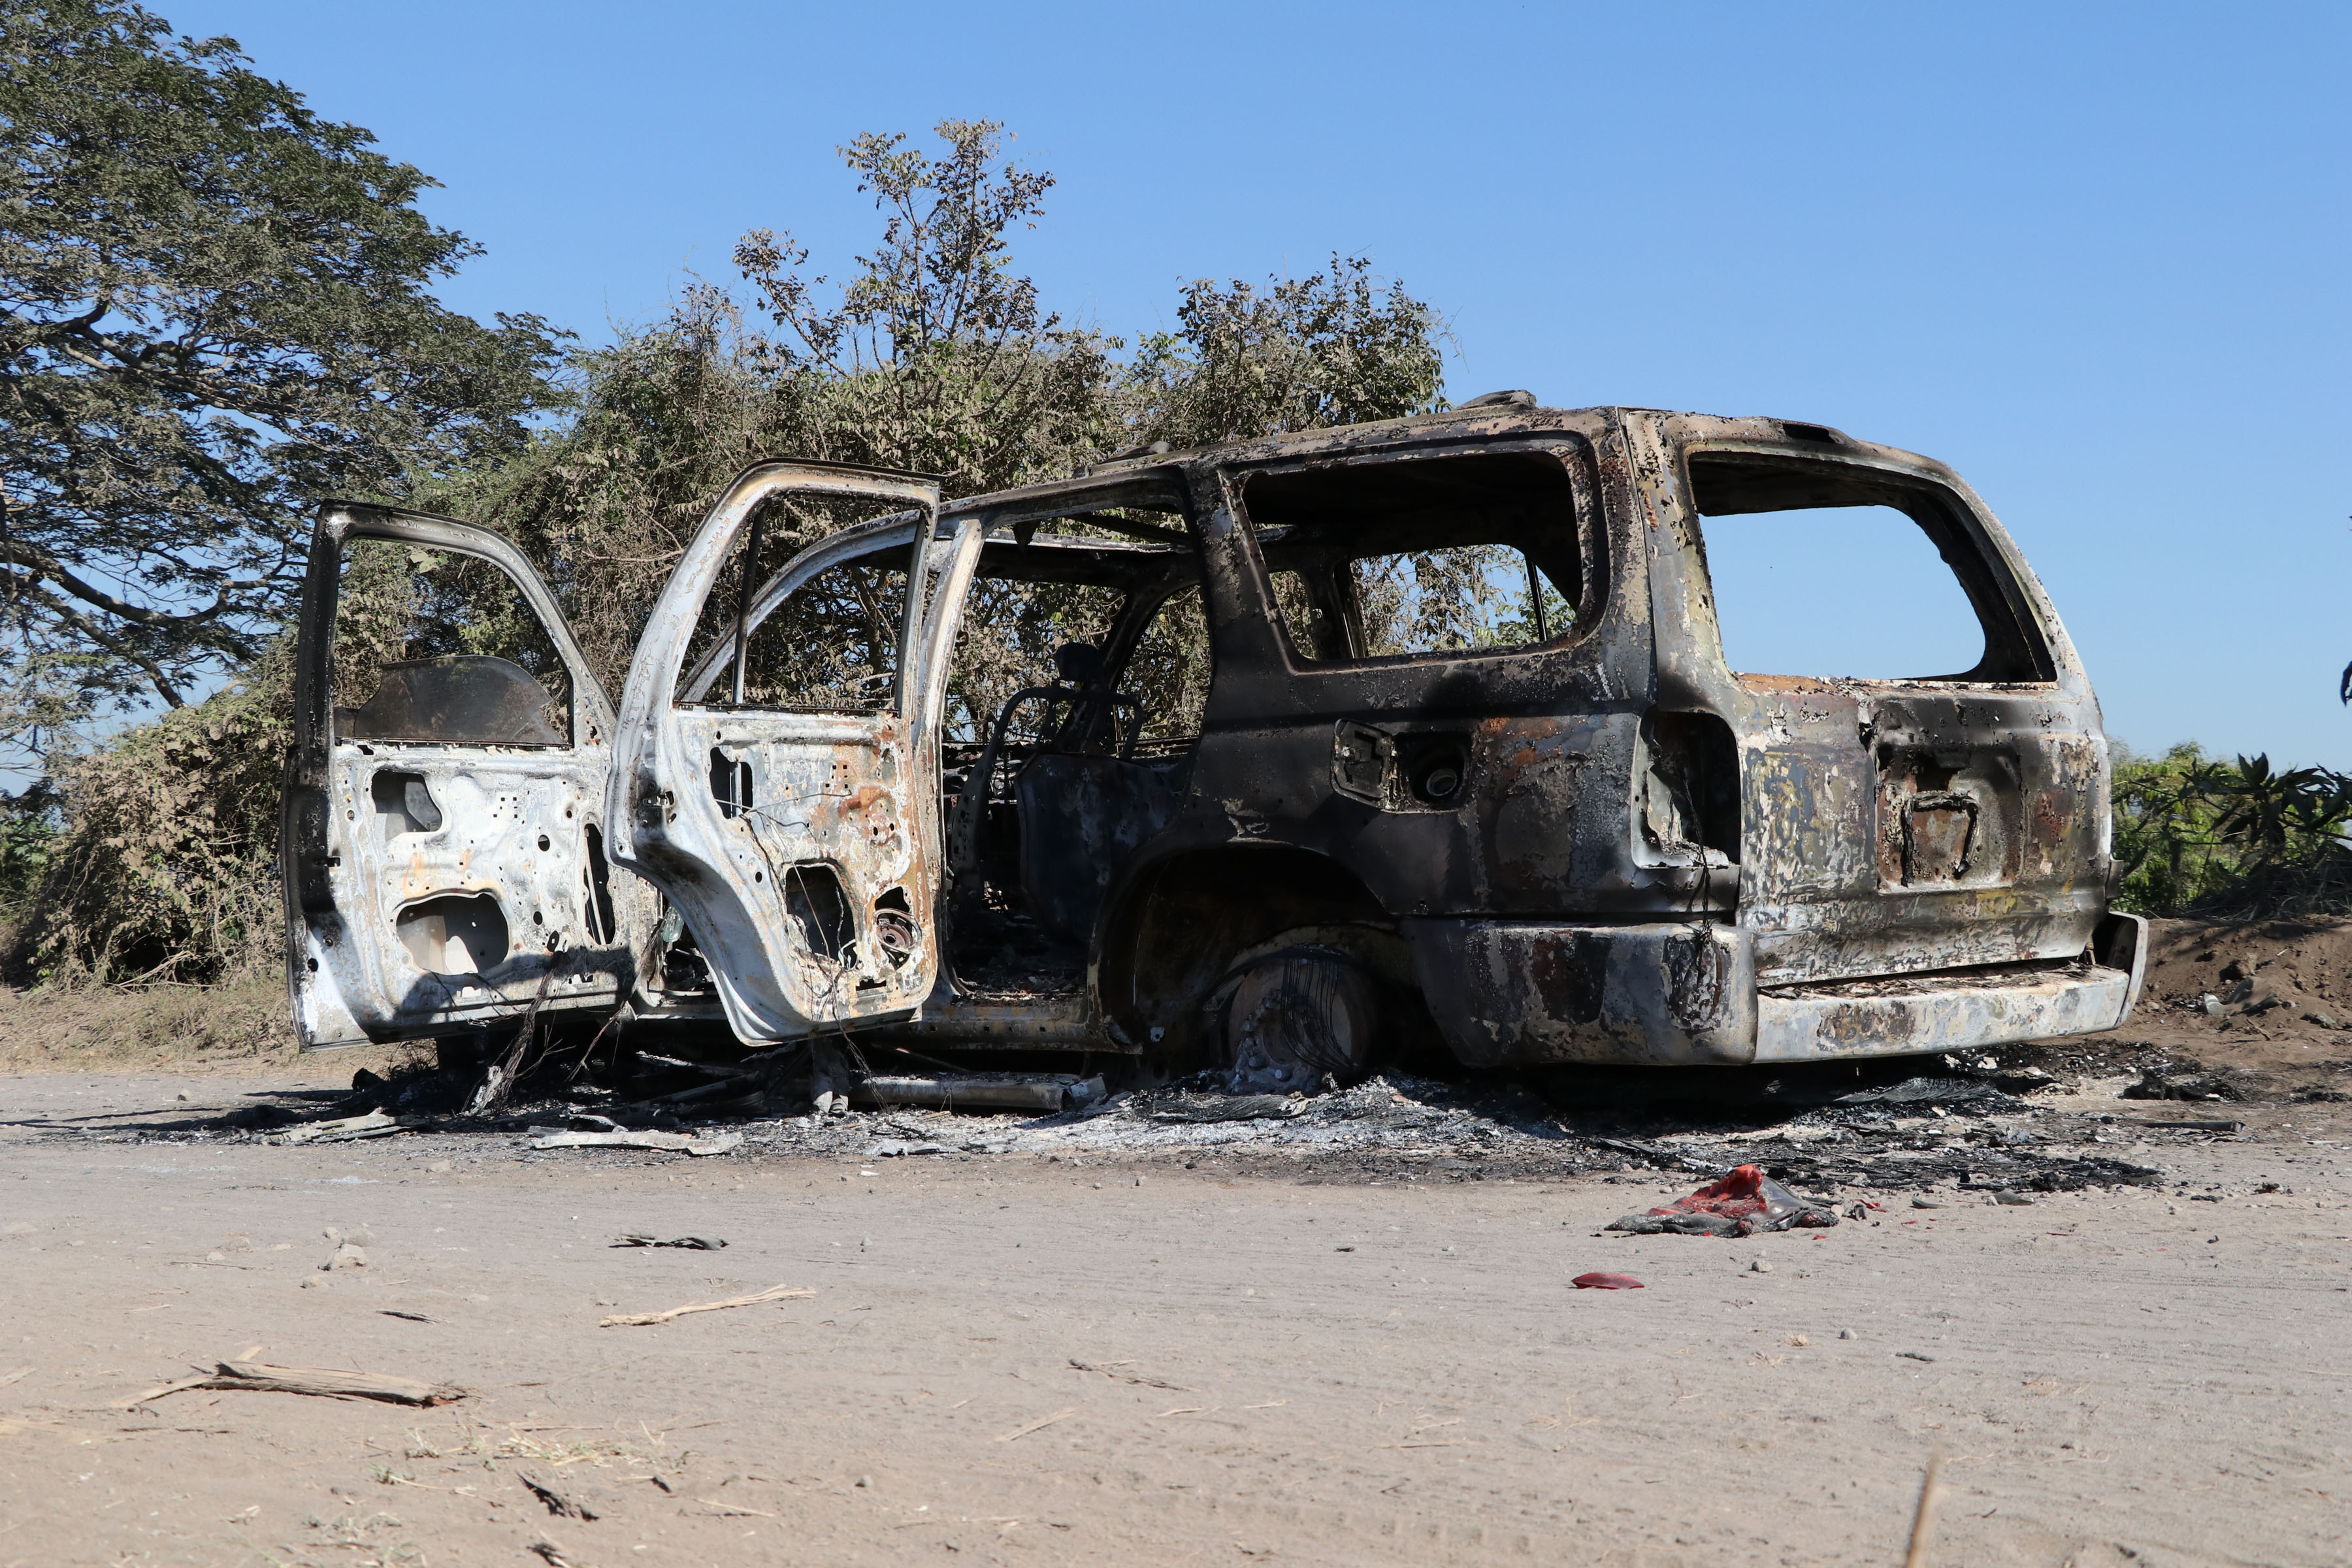 El vehículo fue encontrado quemado y se desconoce el paradero de los tripulantes. (Foto Prensa Libre: Carlos Paredes)